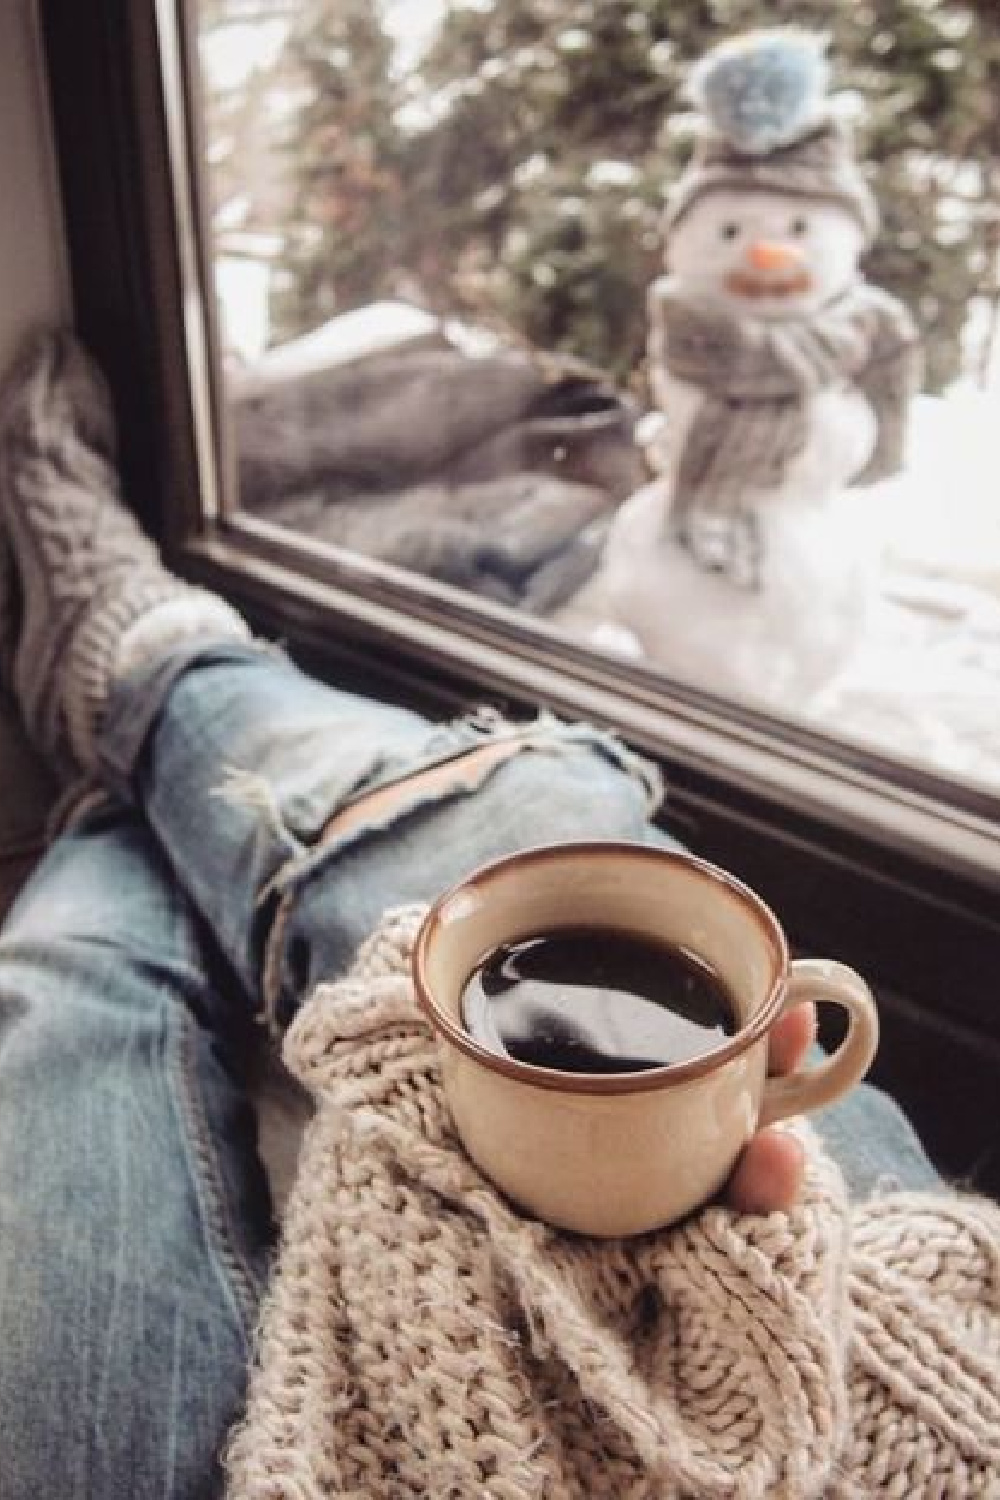 Snowman outside of window with cozy coffee held in hand - @marzena.marideko. #cozychristmas #winterwonder